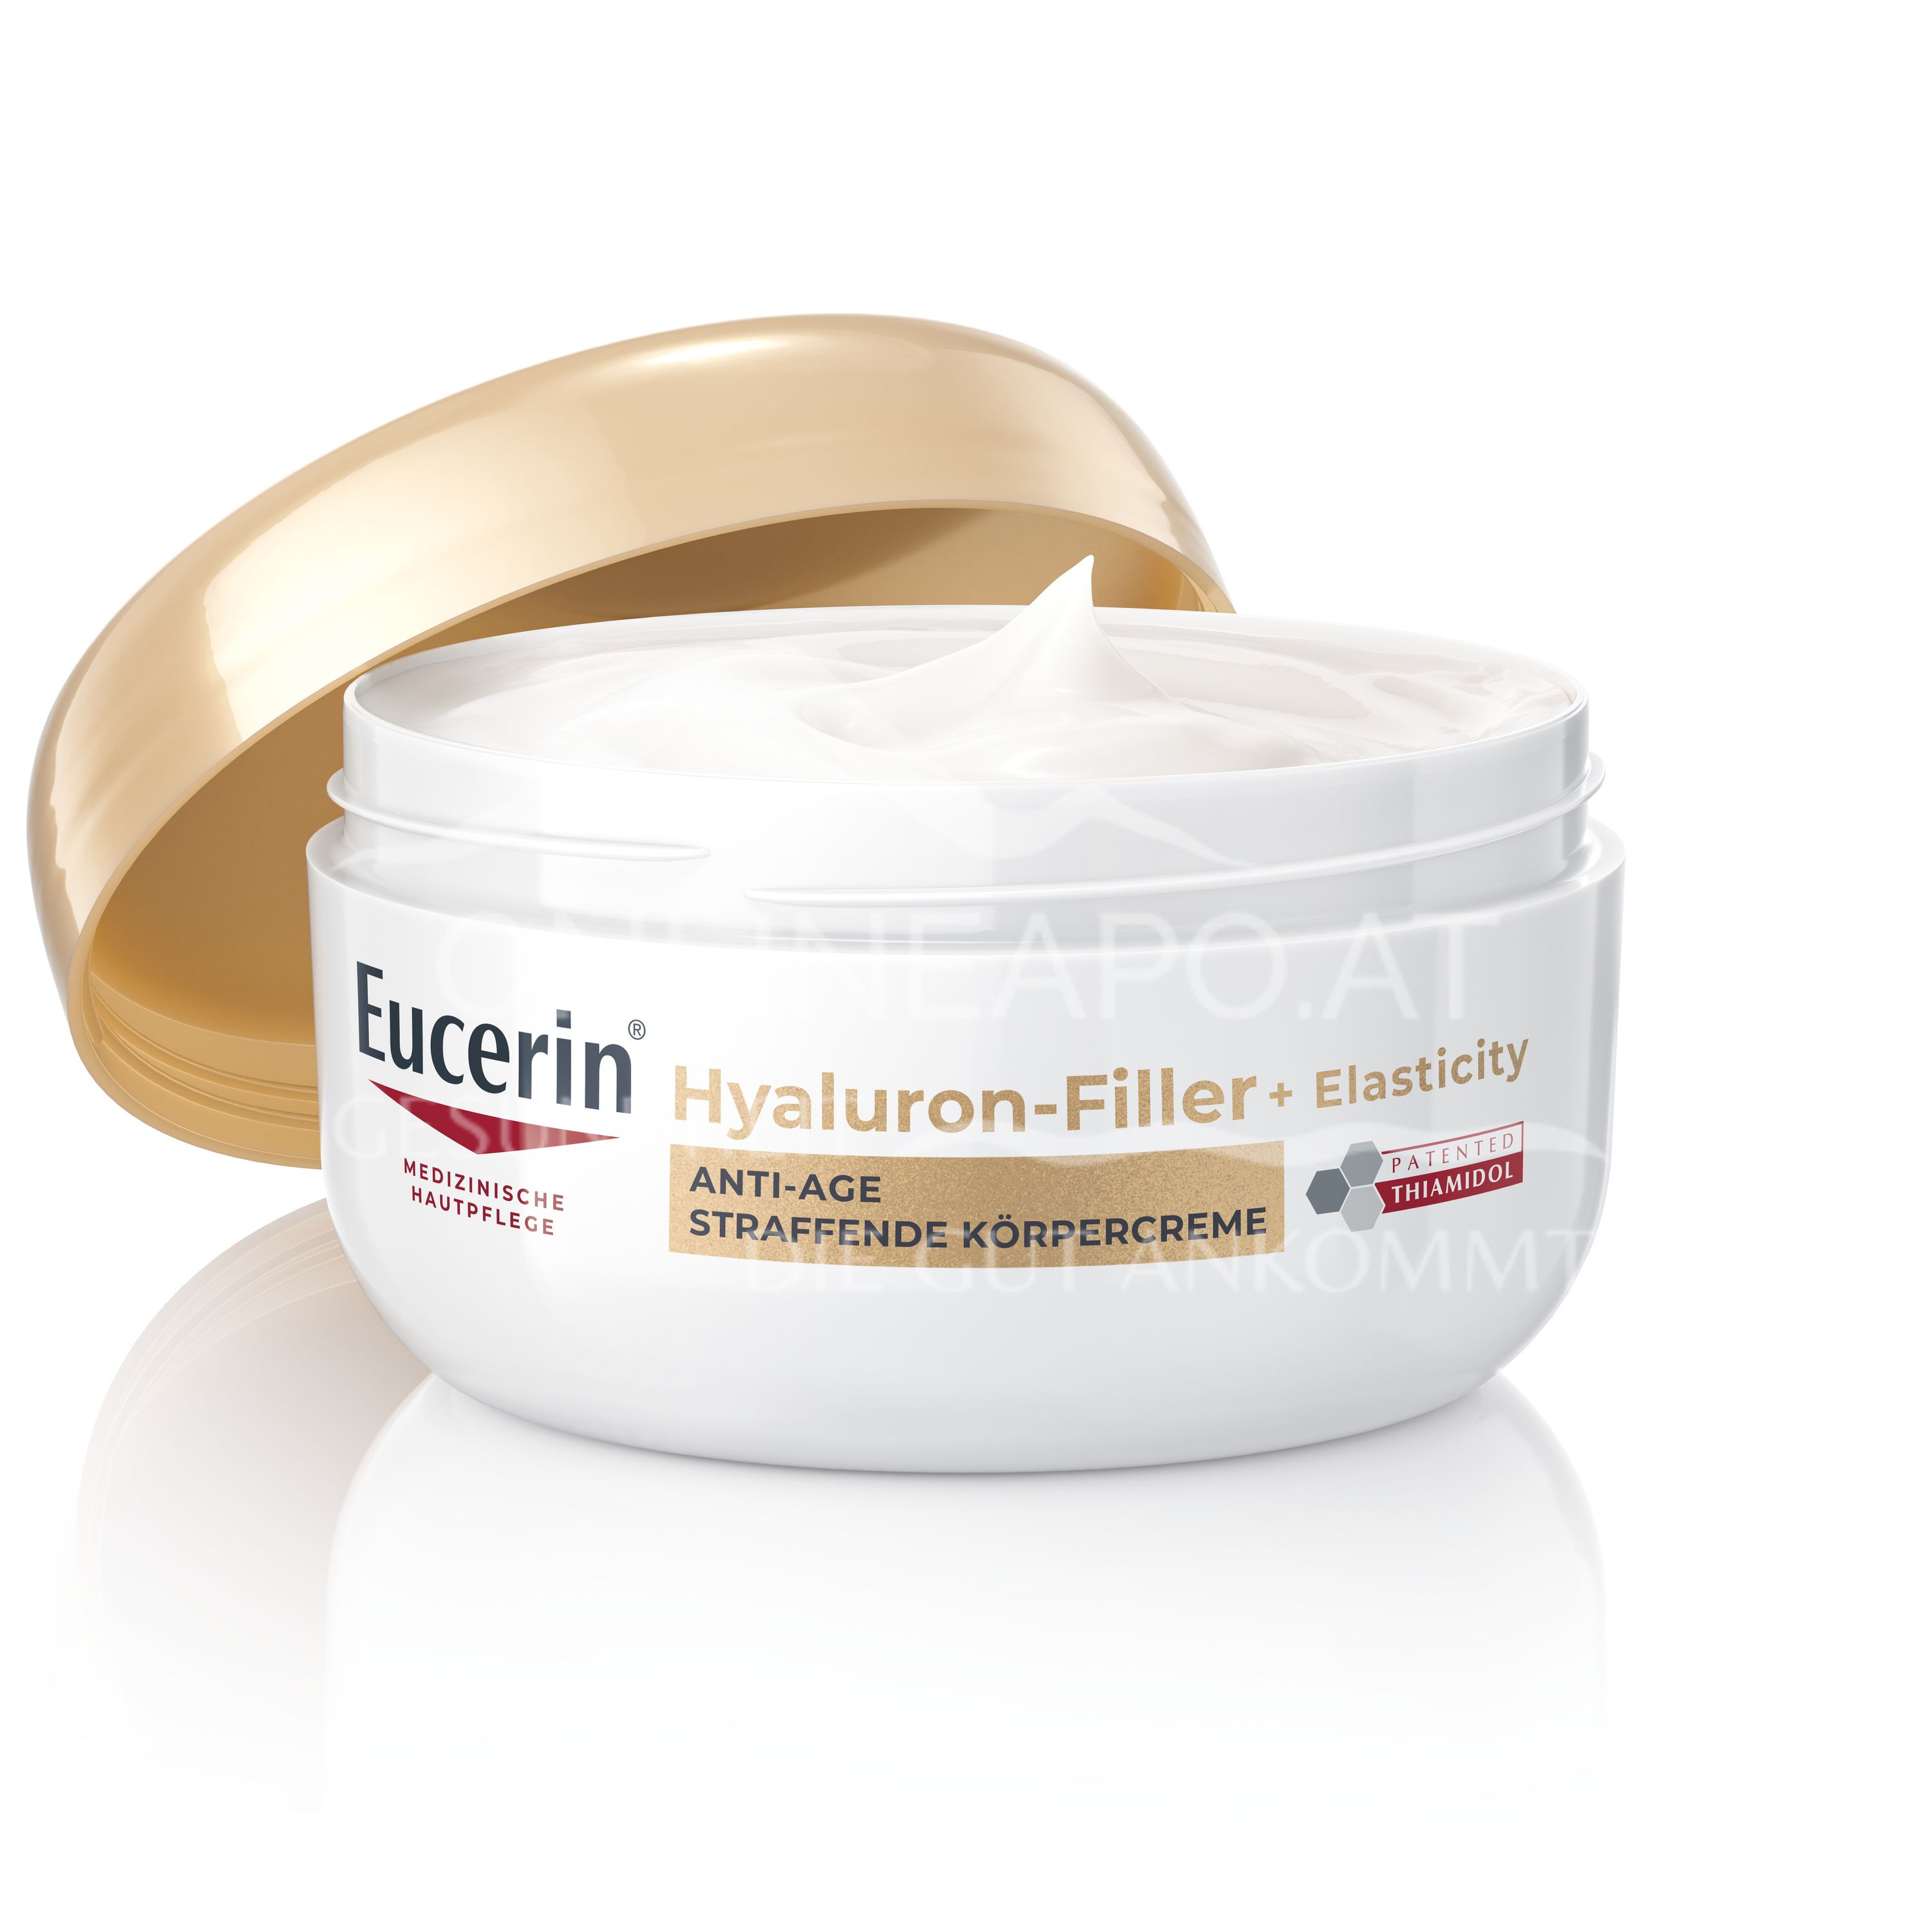 Eucerin® HYALURON-FILLER + ELASTICITY Anti-Age Straffende Körperpflege